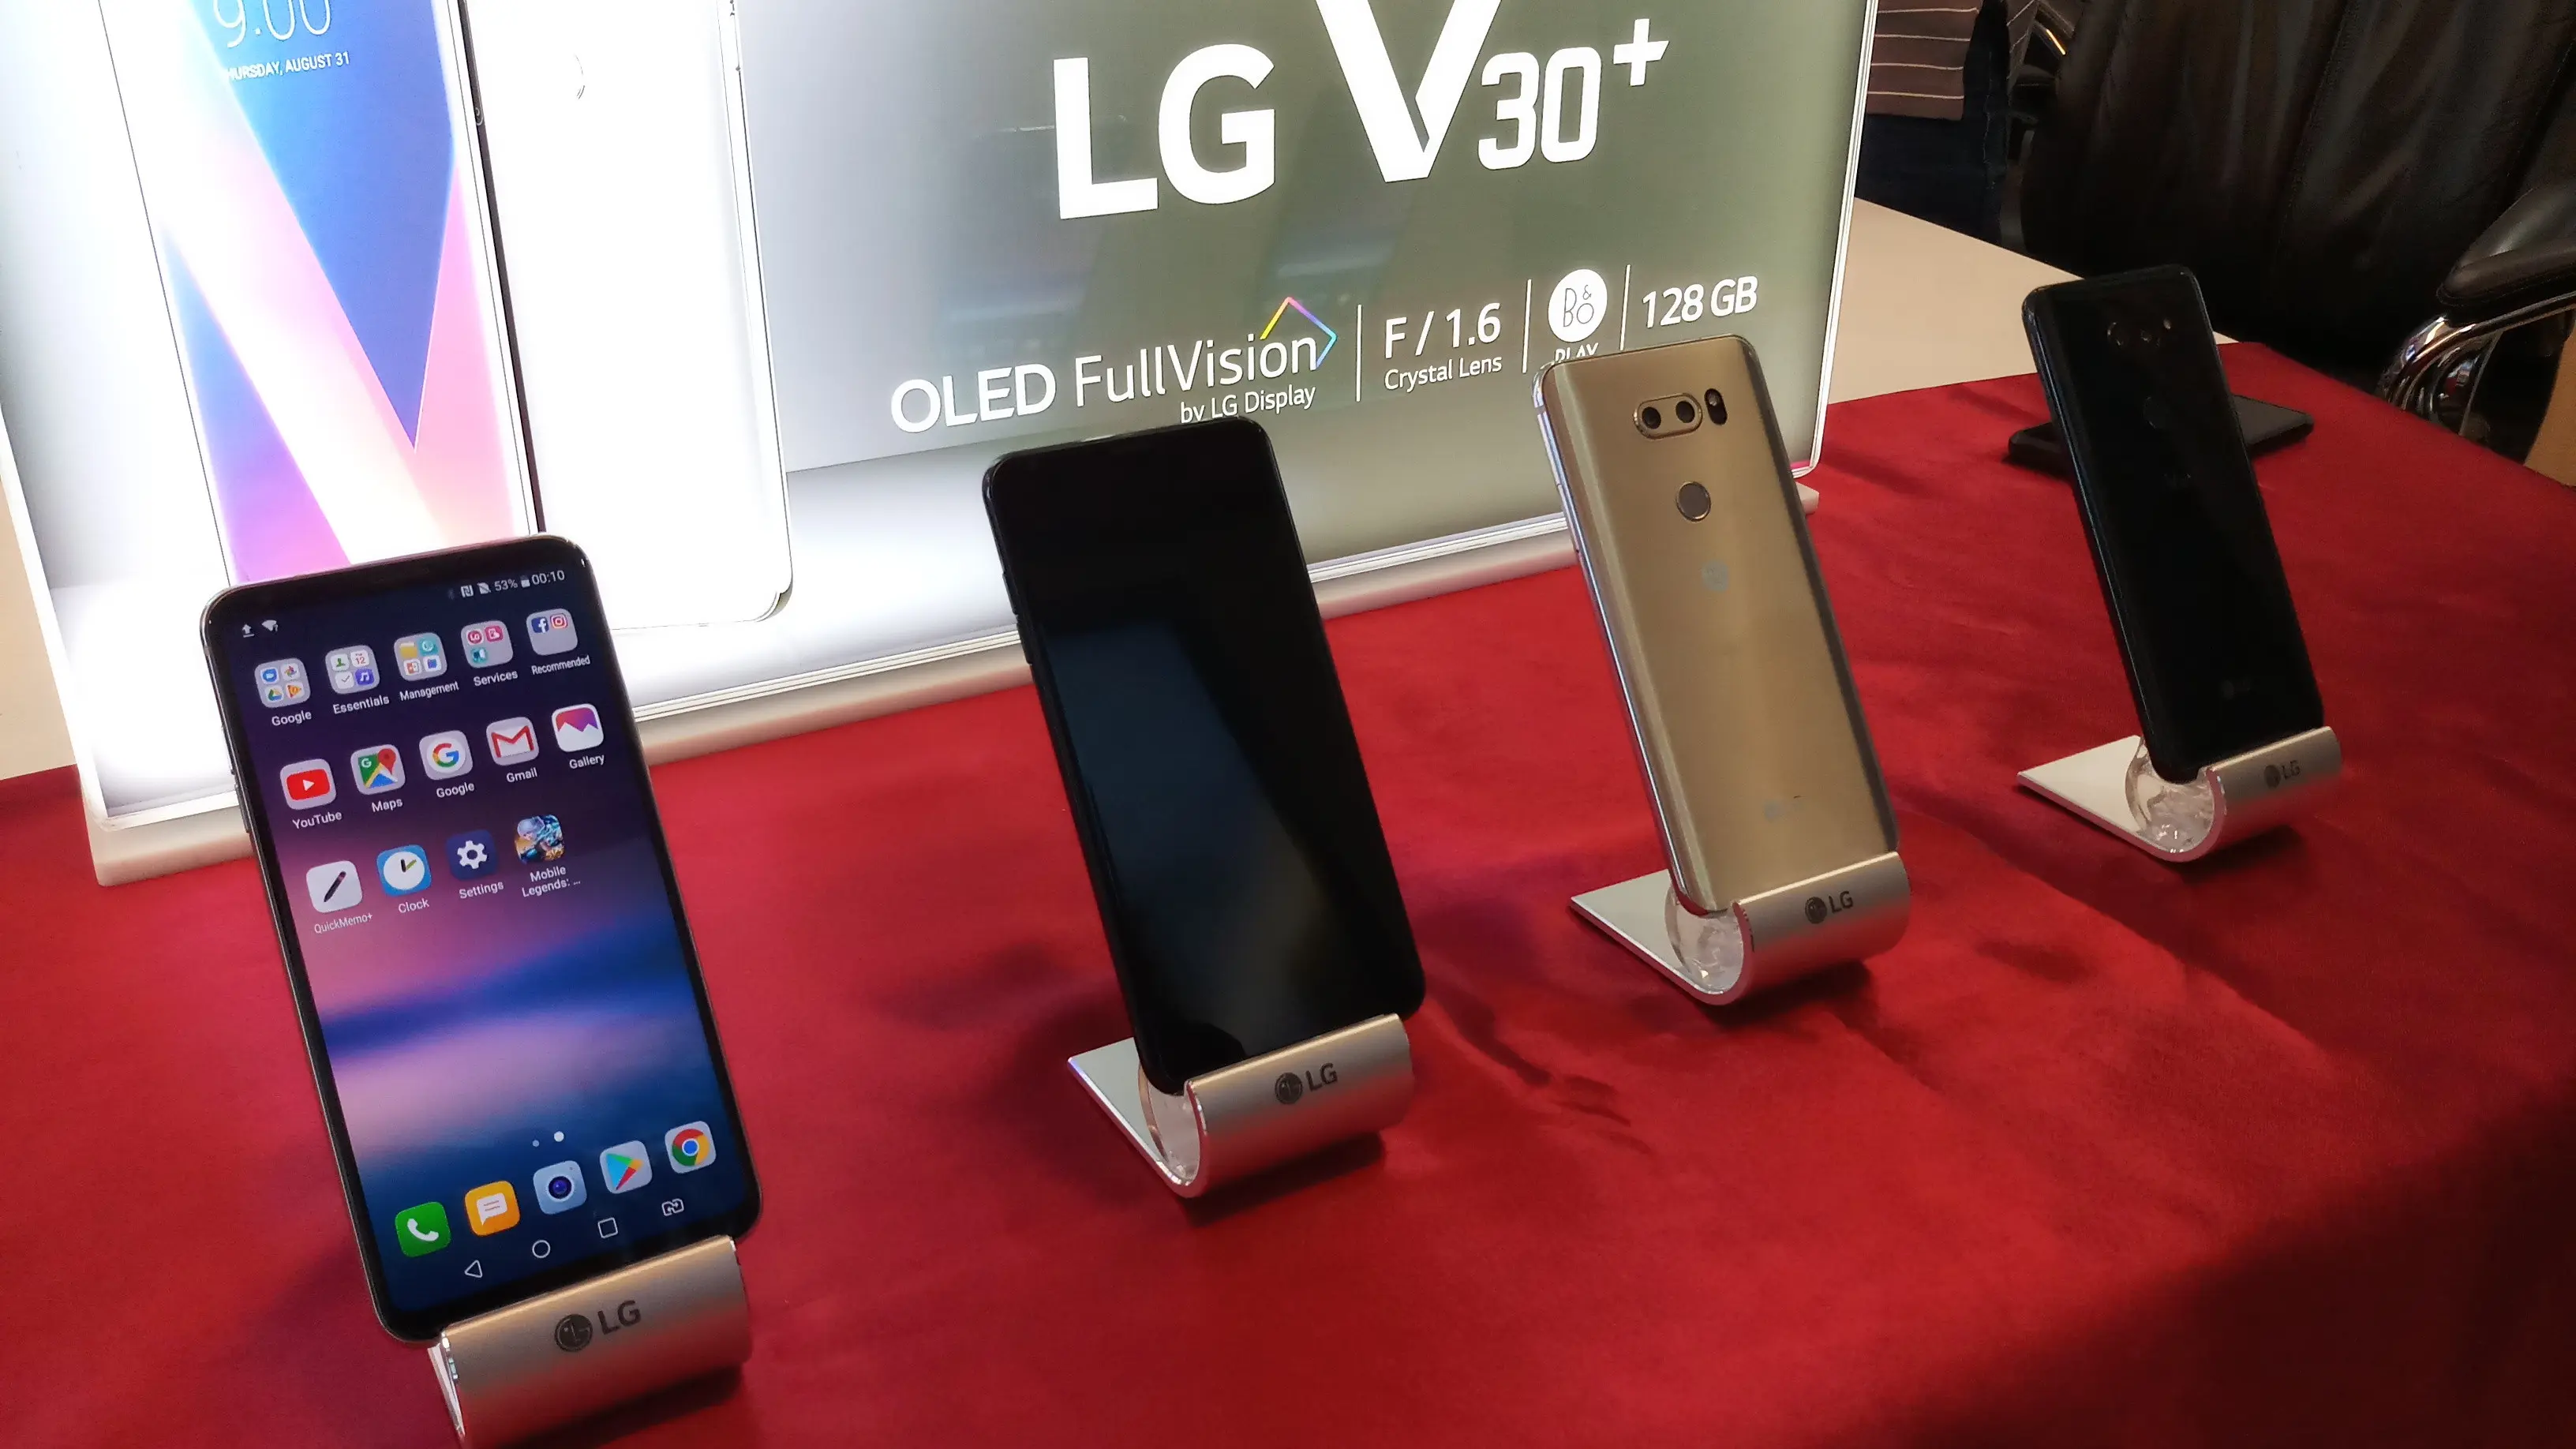 LG V30+ bakal hadir di Indonesia dalam dua varian warna yakni Aurora Black dan Cloud Silver (Liputan6.com/ Agustin Setyo W)